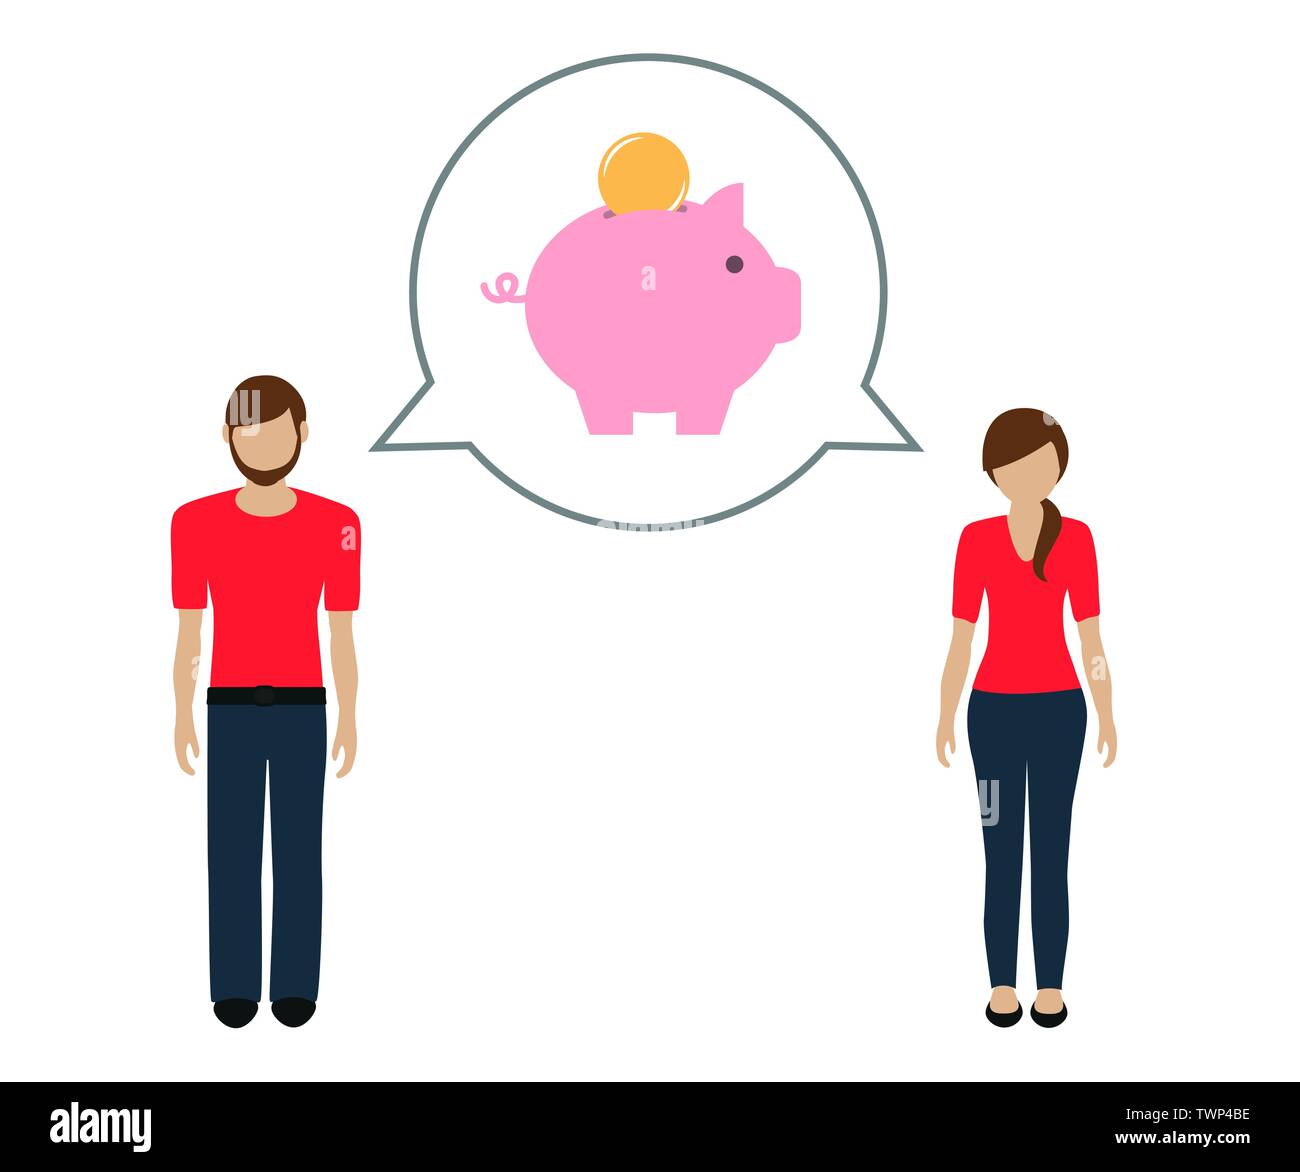 Mann und Frau sprechen über das Speichern von Geld im Sparschwein Vektor-illustration EPS 10. Stock Vektor